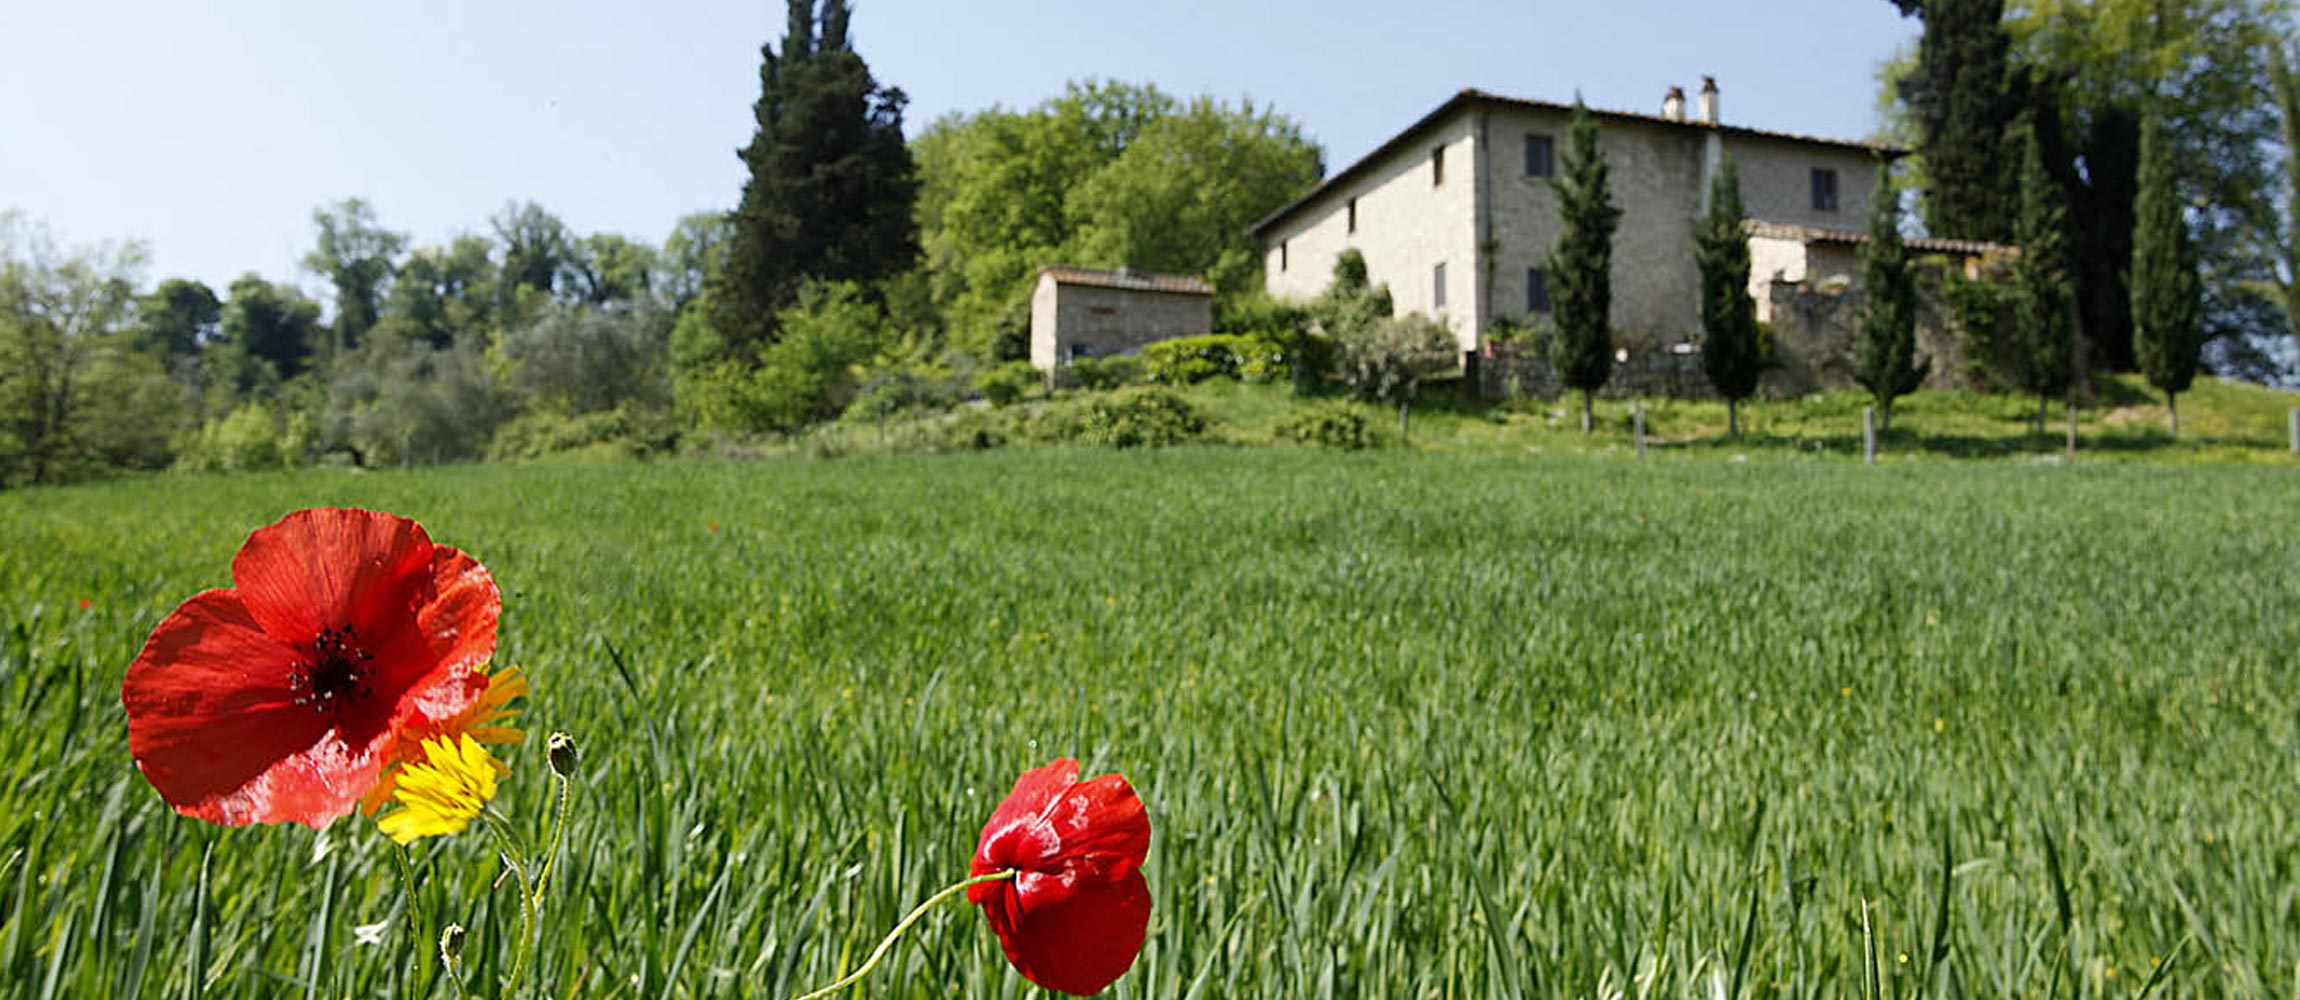 Tuscany Stone Farm Houses